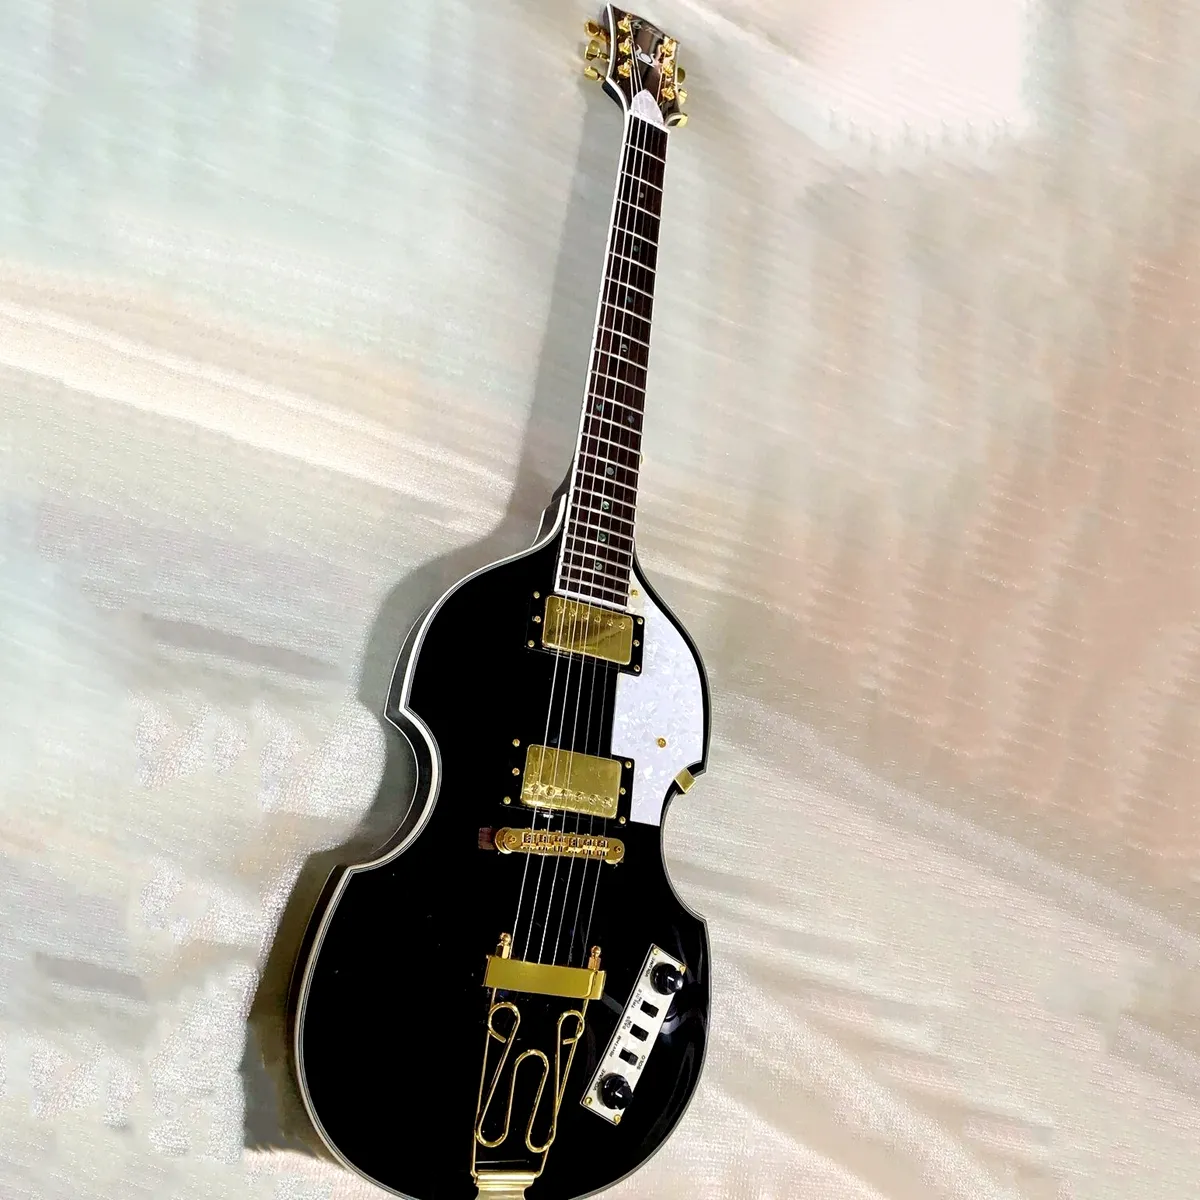 Hofner Viool Elektrische Gitaar Zwart 6-snarige elektrische gitaar Esdoorn Body Professioneel instrument